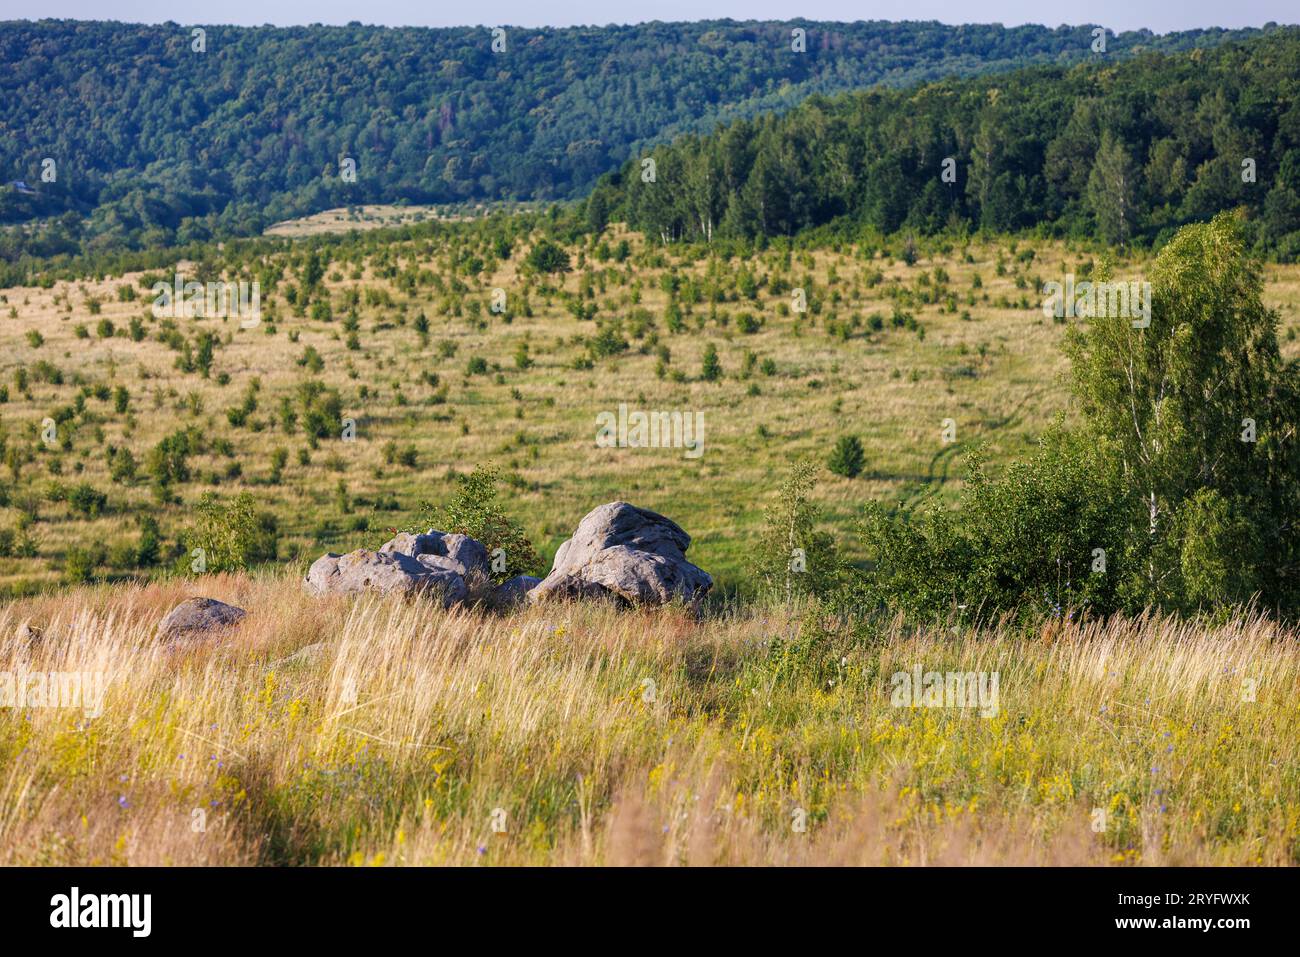 Quarzit-Sandsteinfelsen auf dem Hügel hören Bicrch-Bäume, umgeben von hohem, trockenem Gras mit fernen grünen Wäldern in verschwommenem Hintergrund Stockfoto